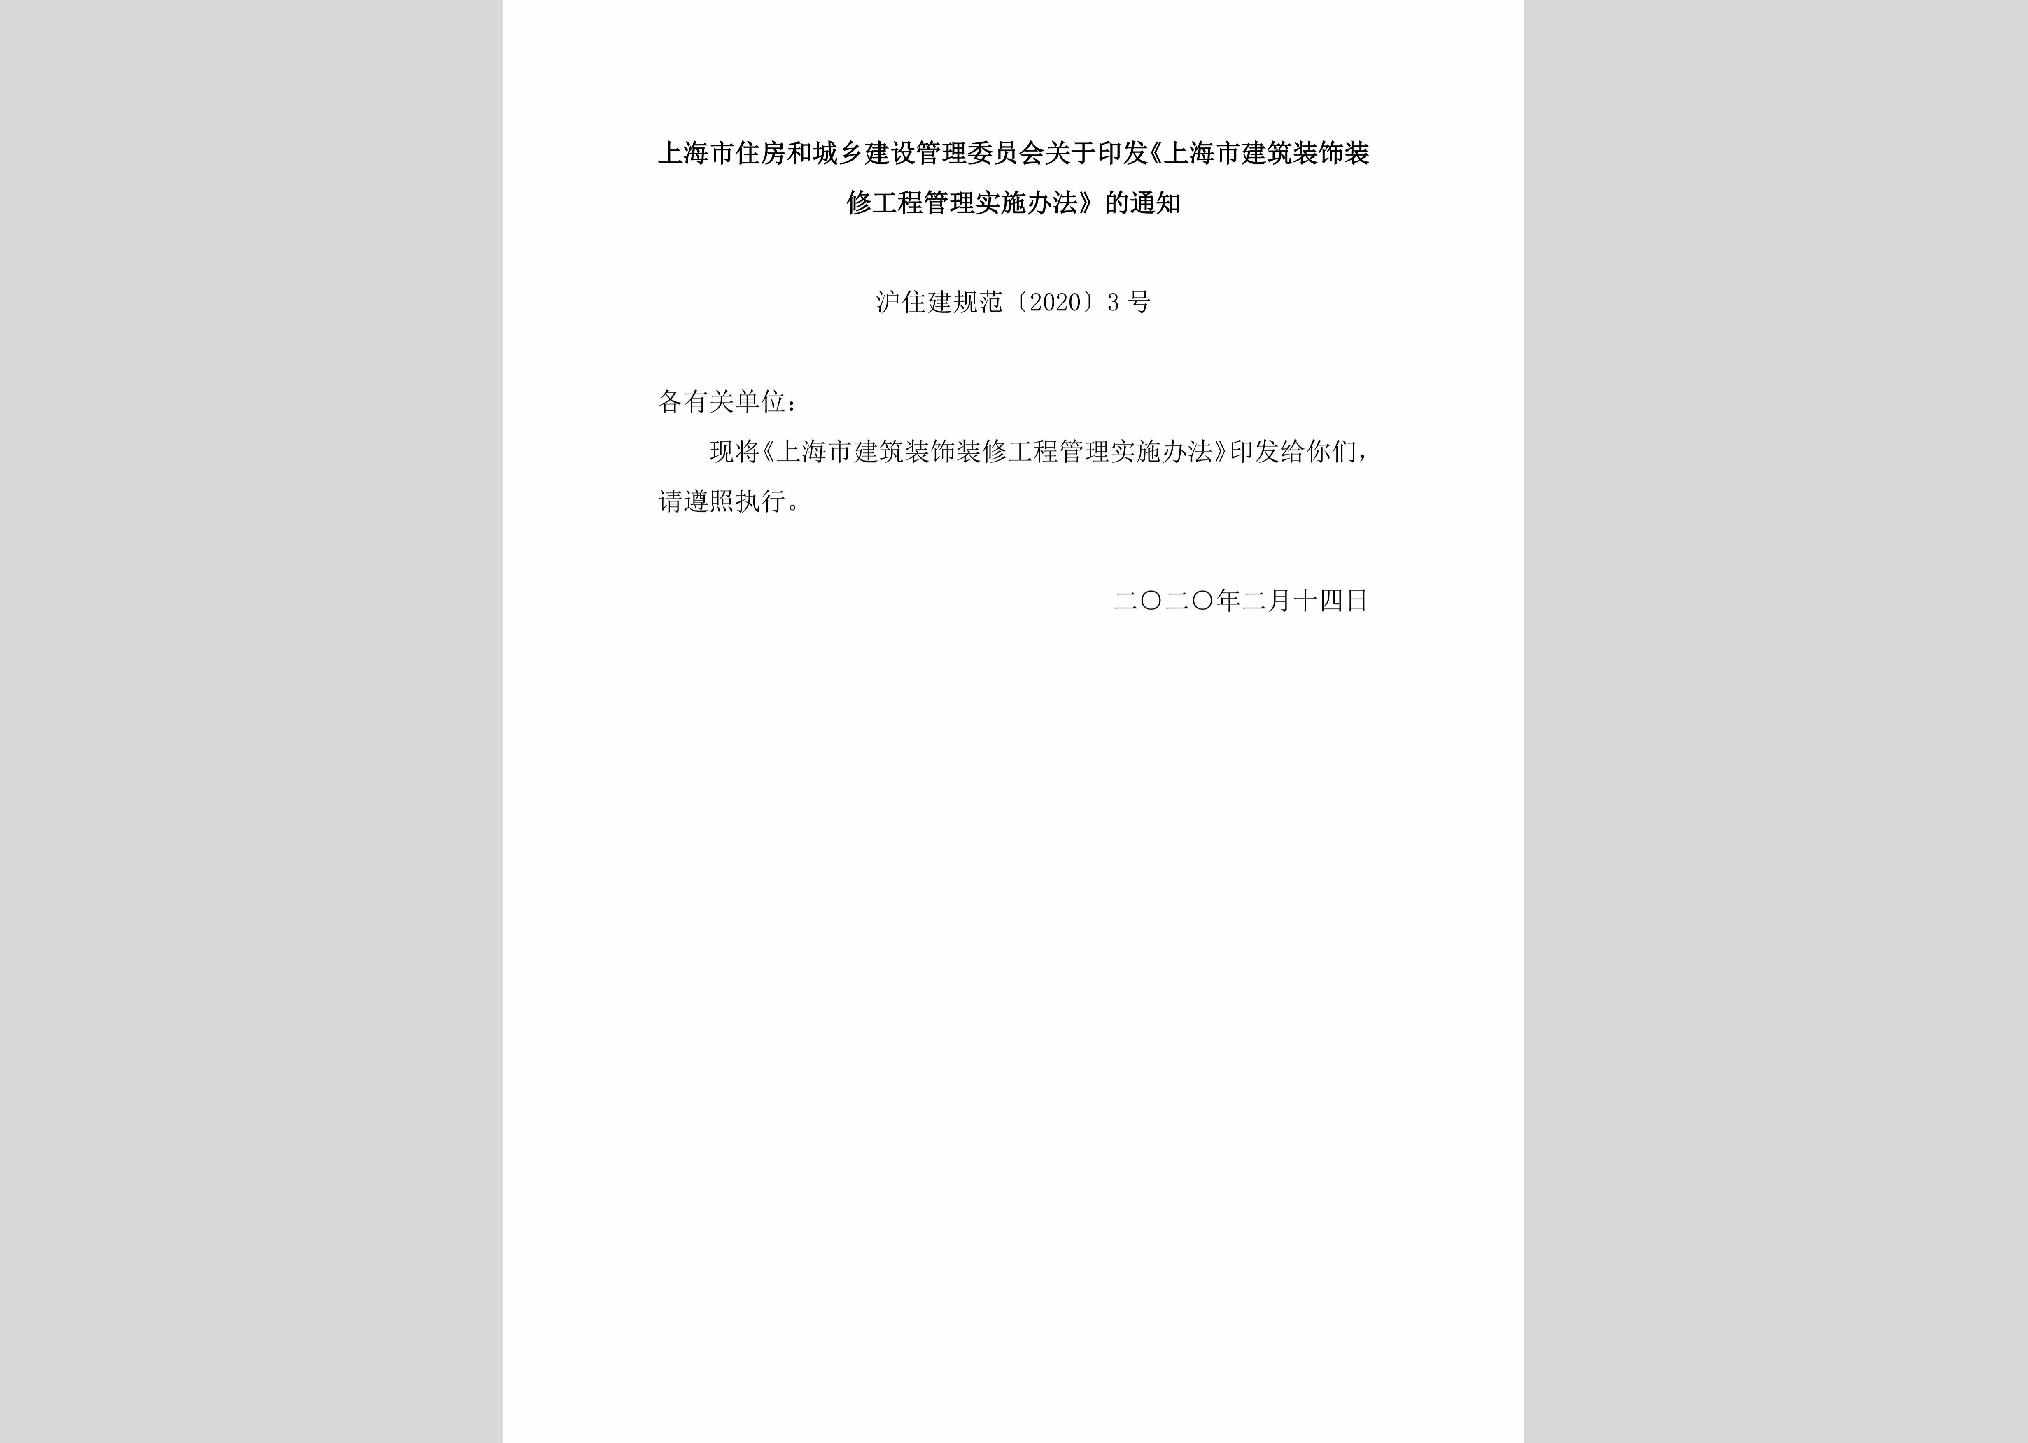 沪住建规范[2020]3号：上海市住房和城乡建设管理委员会关于印发《上海市建筑装饰装修工程管理实施办法》的通知